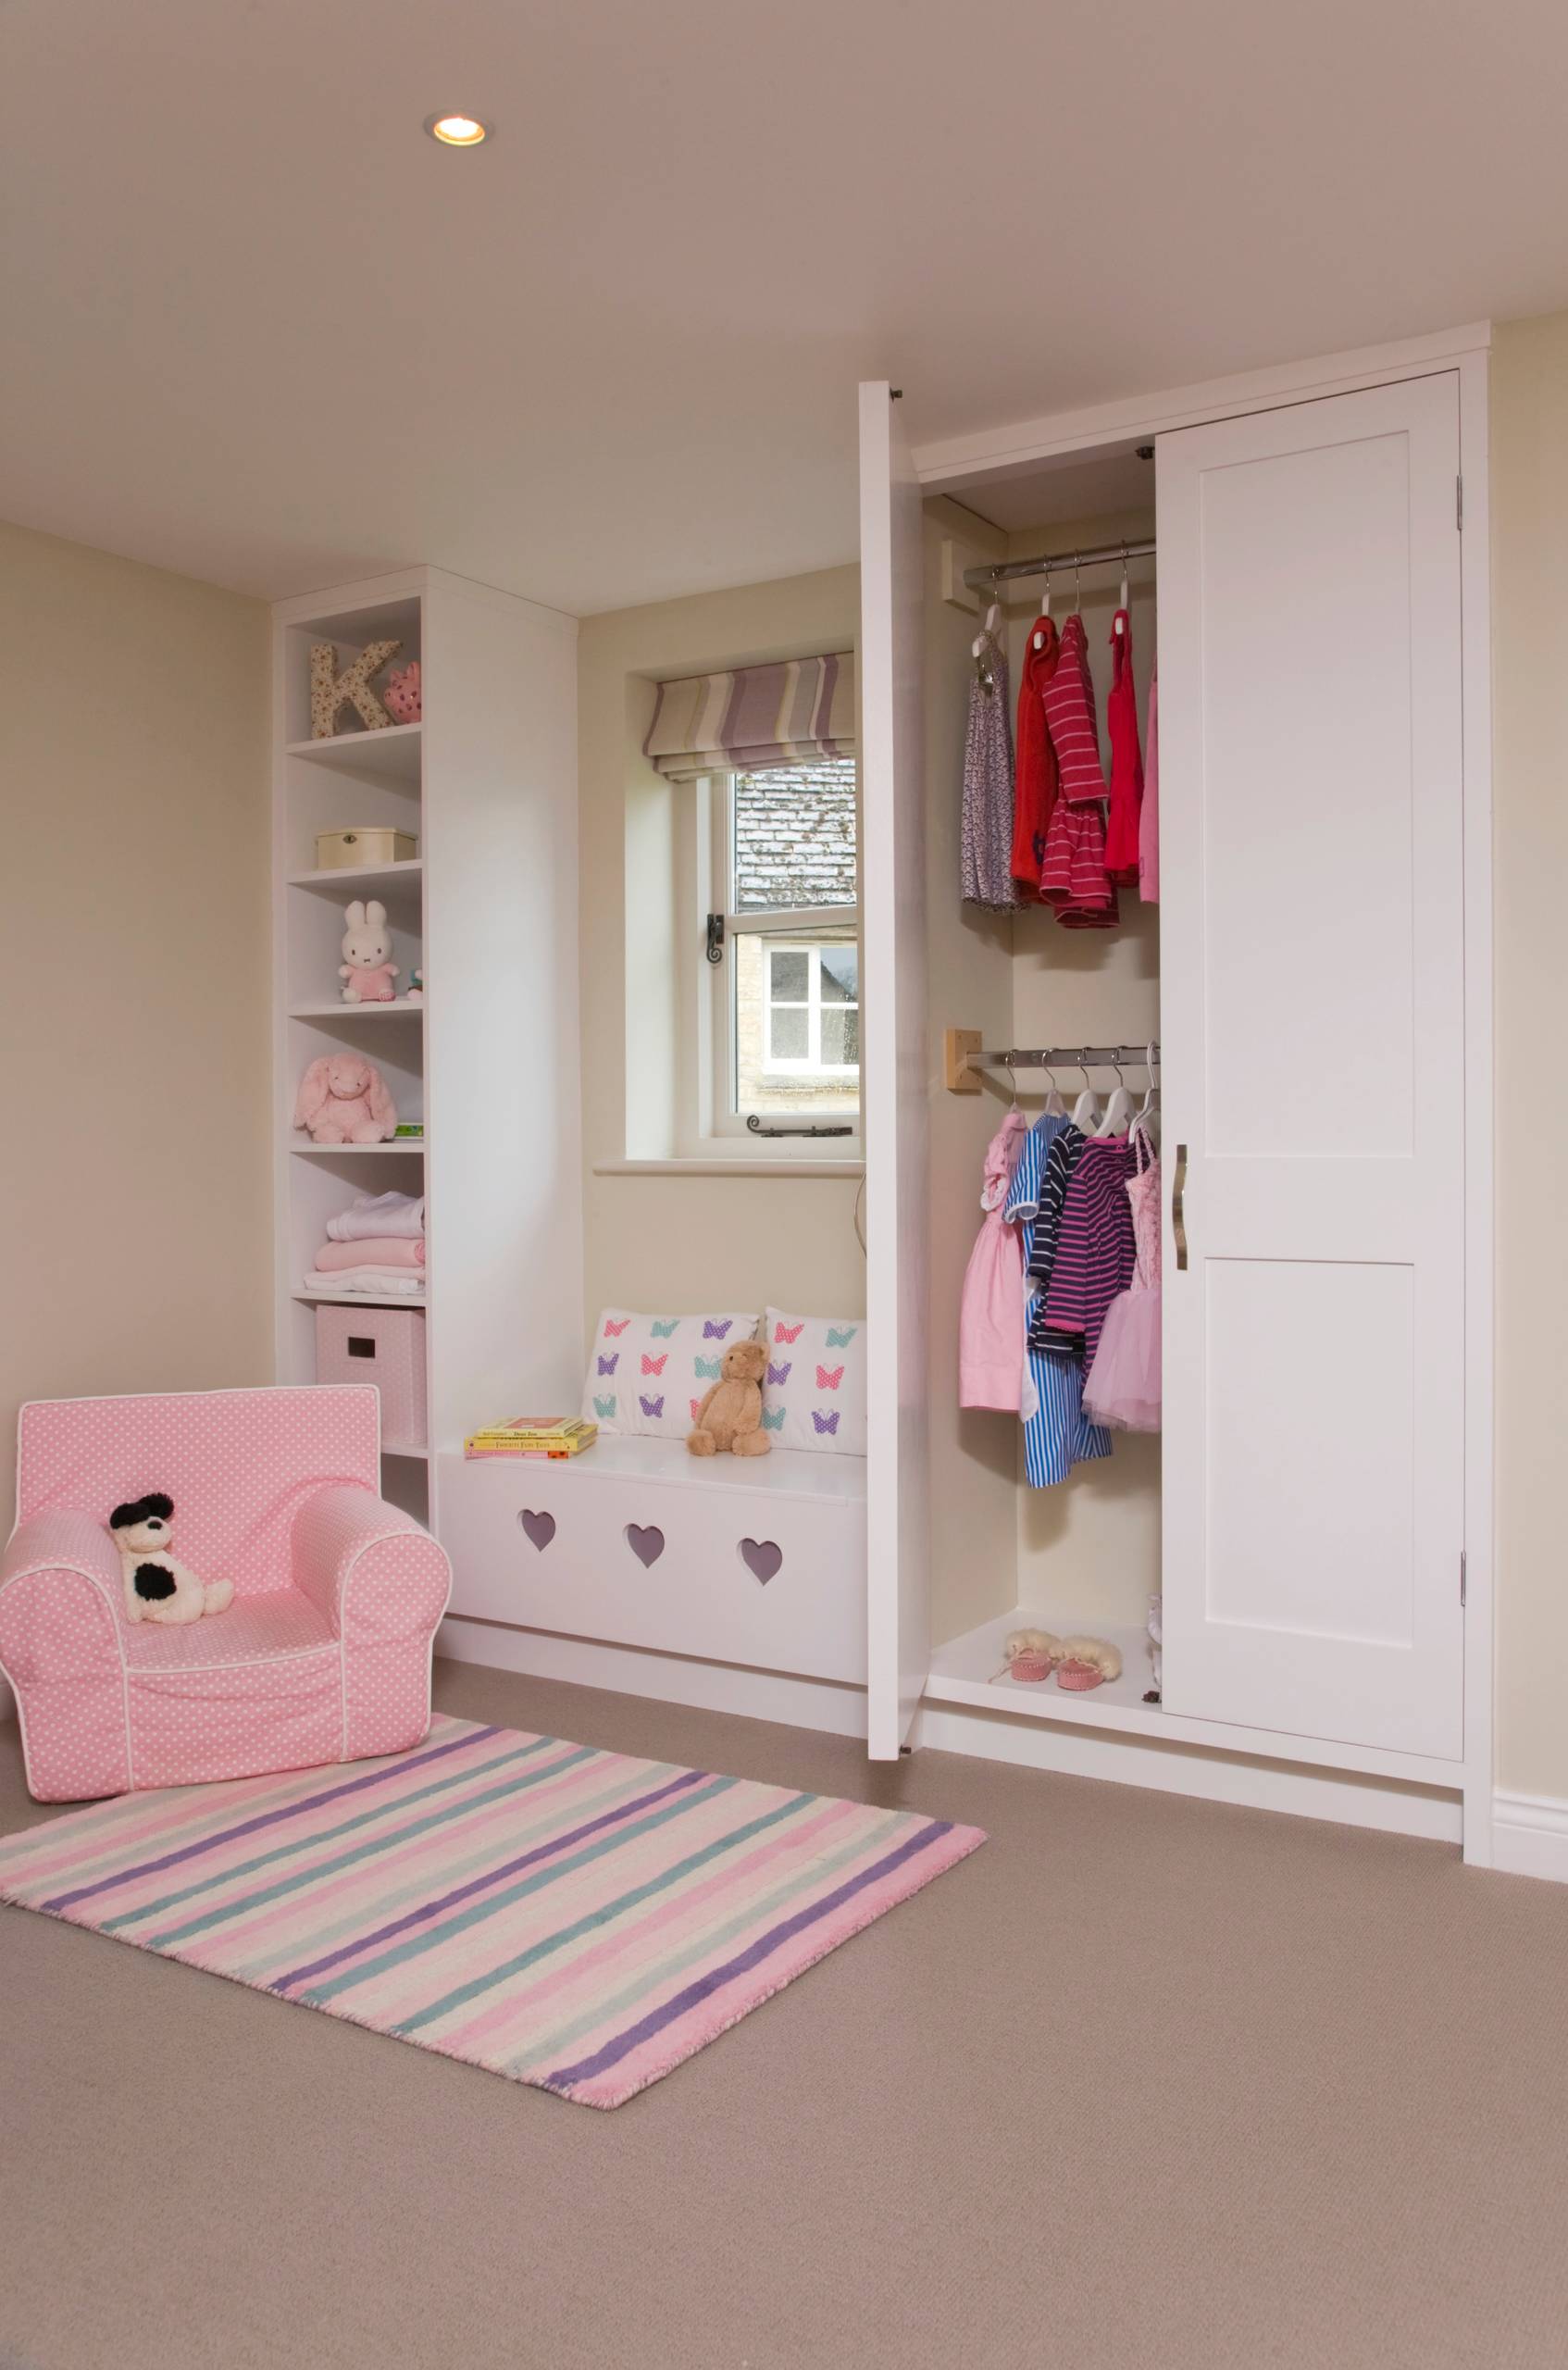 Шкаф для детской комнаты